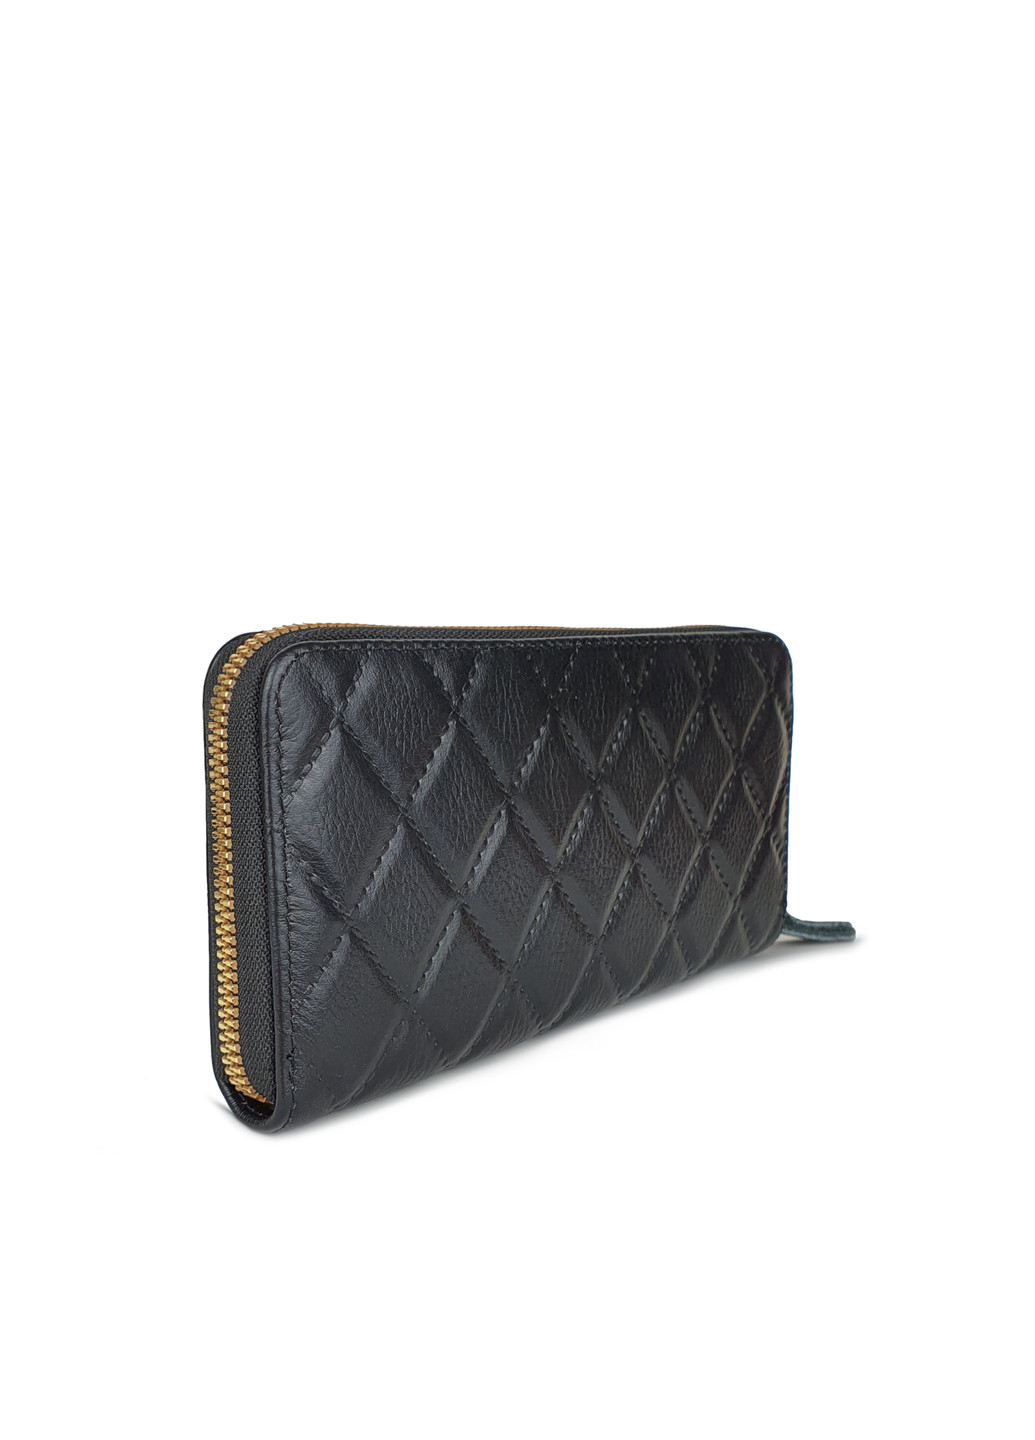 Женский кошелек-портмоне черный кожаный в клетку на молнии 19*10*2 Fashion (252033300)